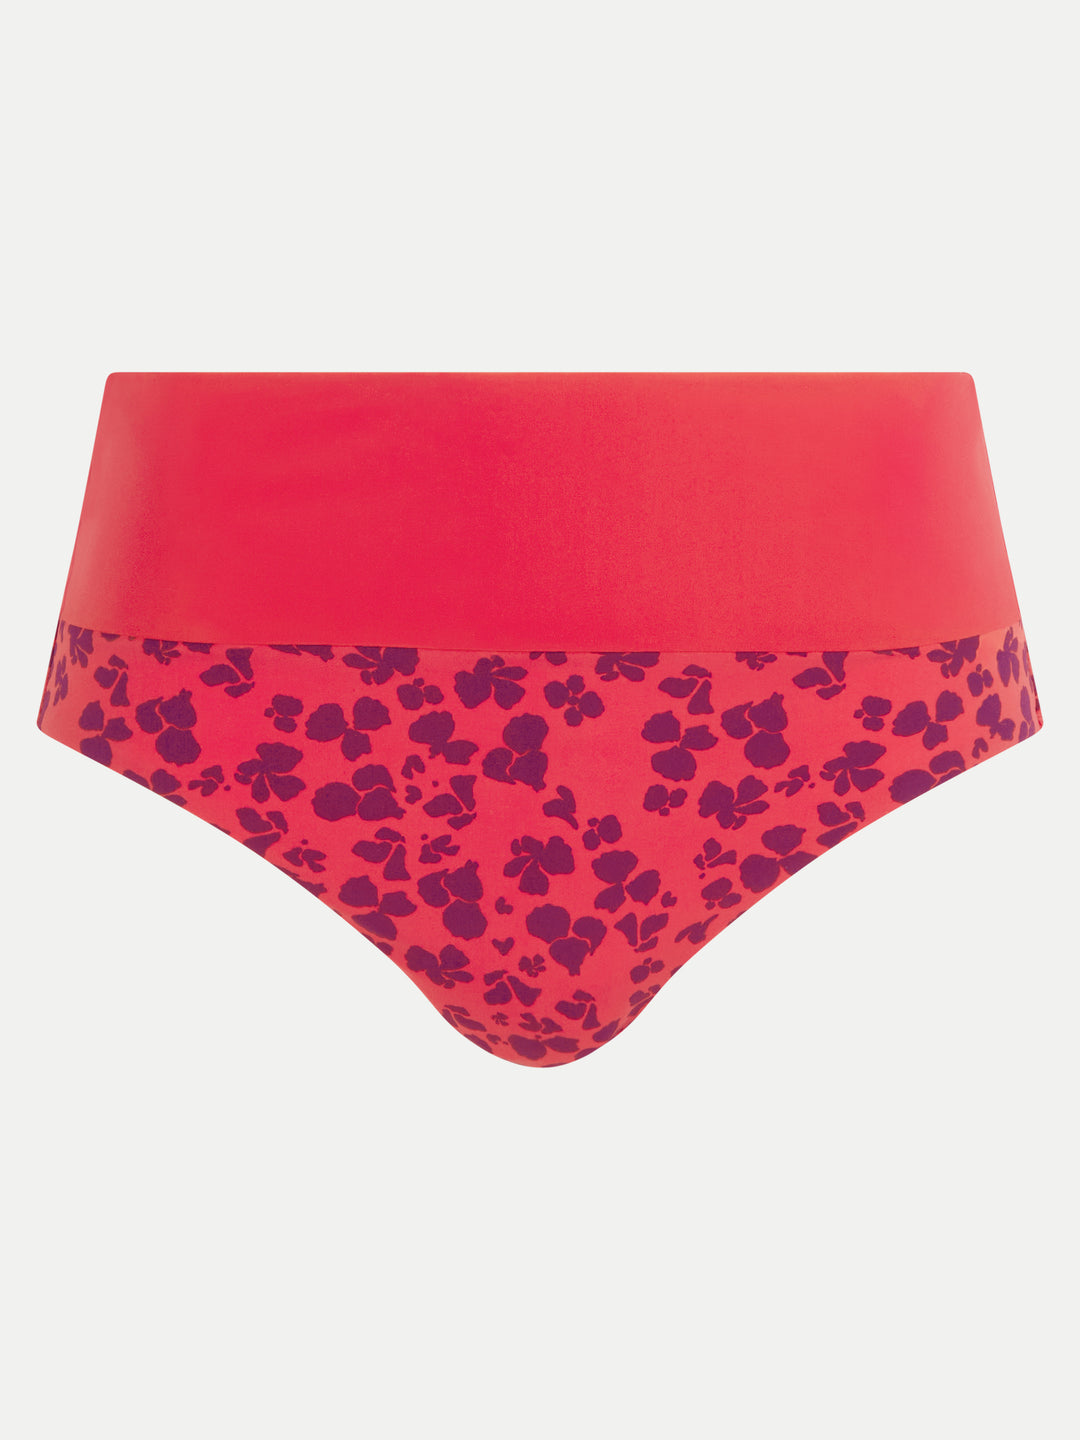 Chantelle Swimwear - Flowers Full Brief Hibiscus